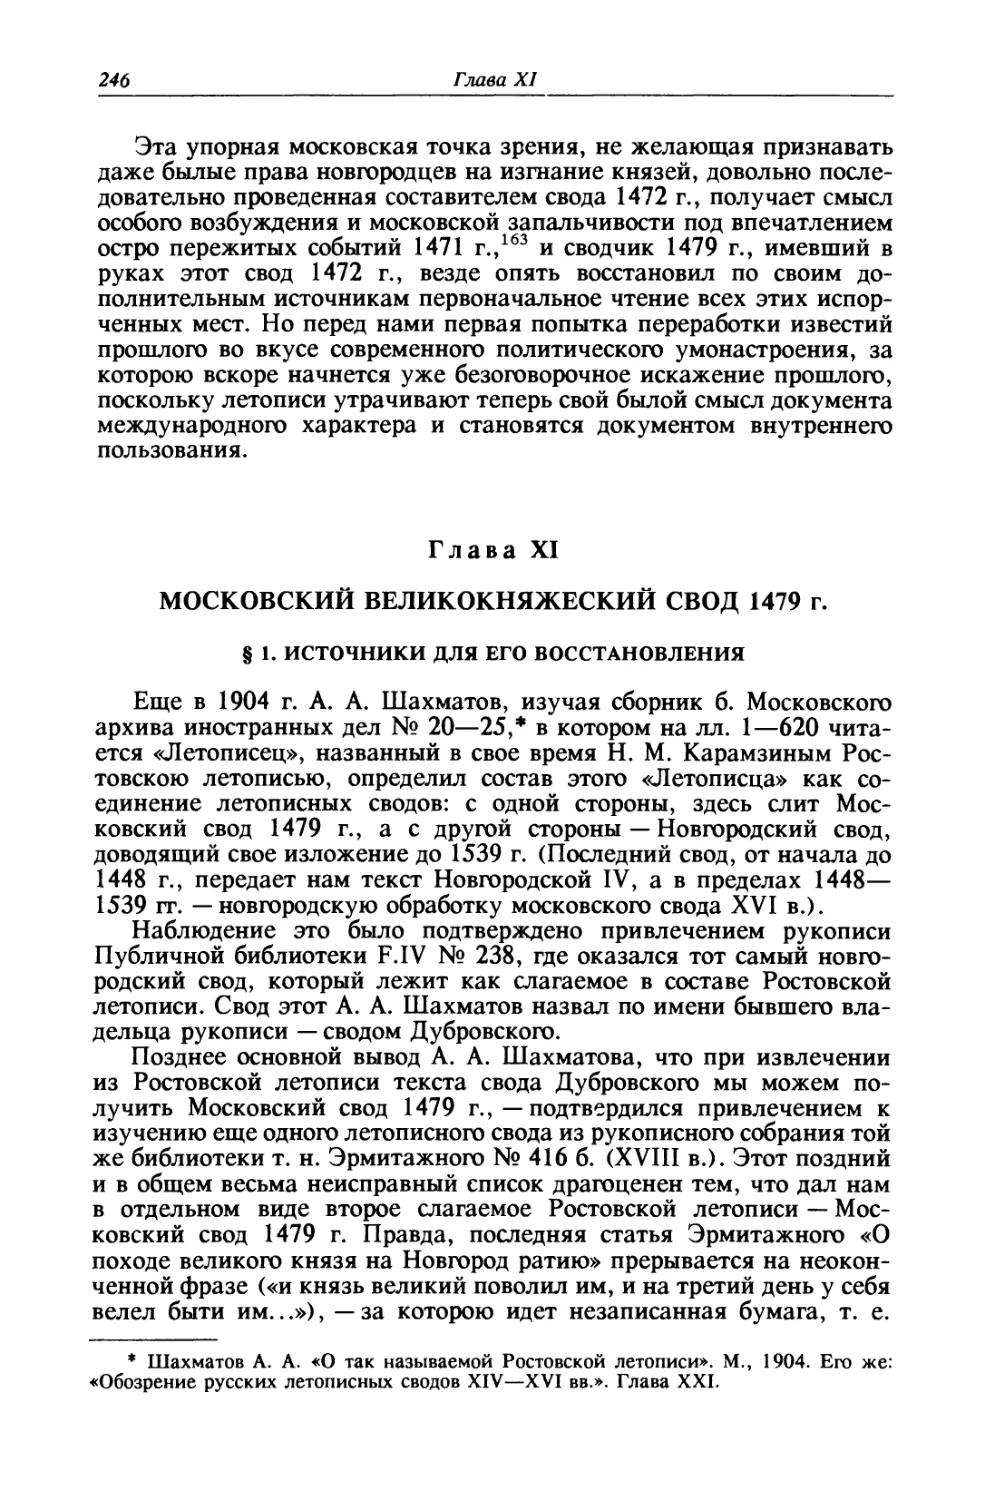 Глава XI. Московский великокняжеский свод 1479 г